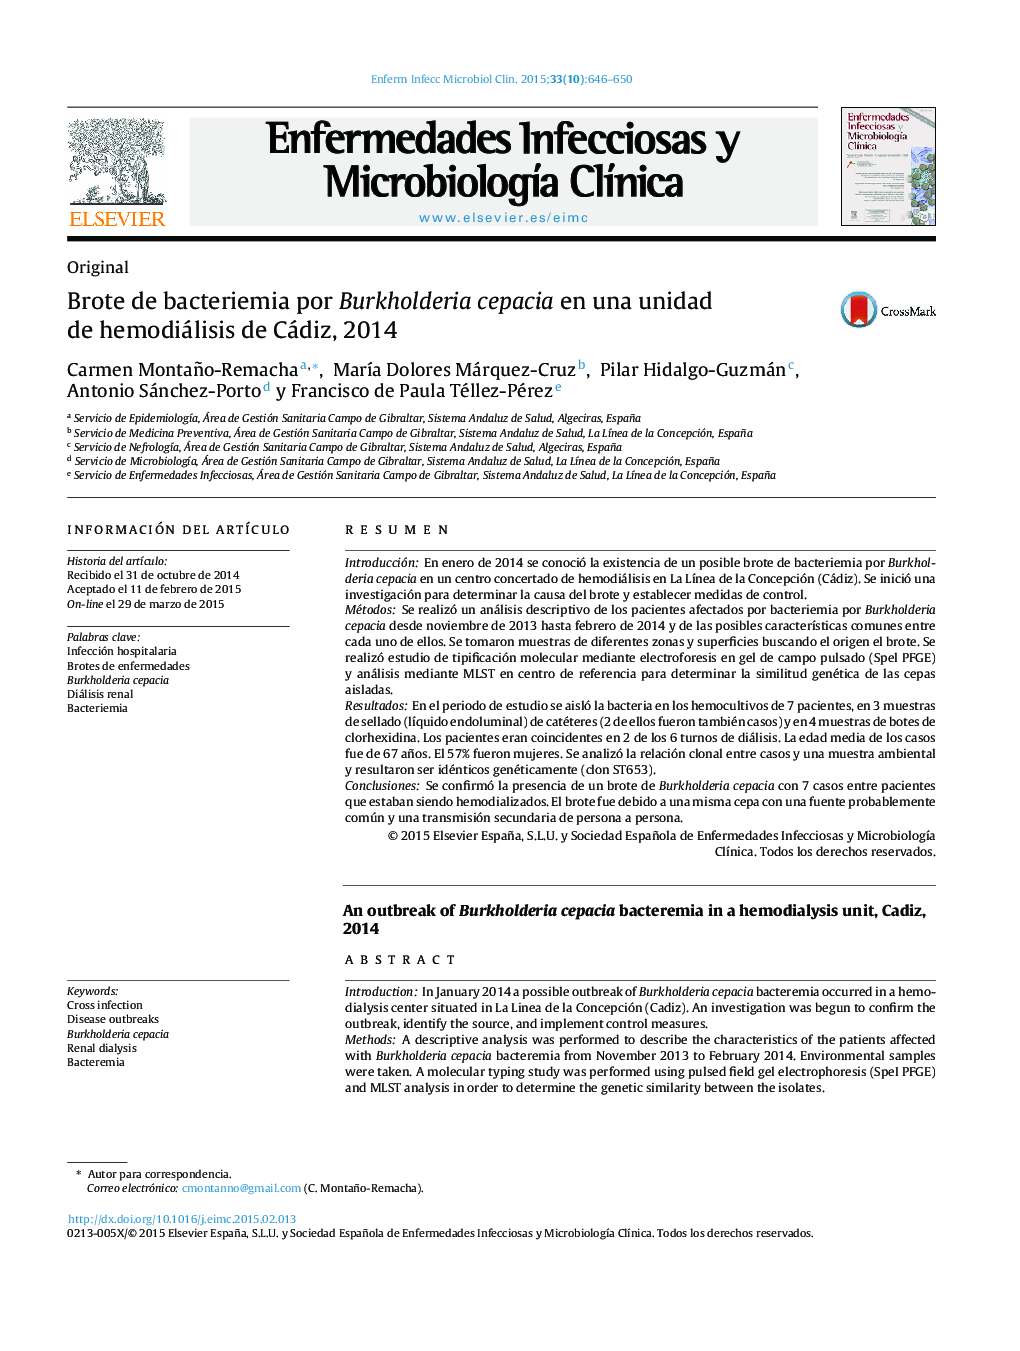 Brote de bacteriemia por Burkholderia cepacia en una unidad de hemodiálisis de Cádiz, 2014